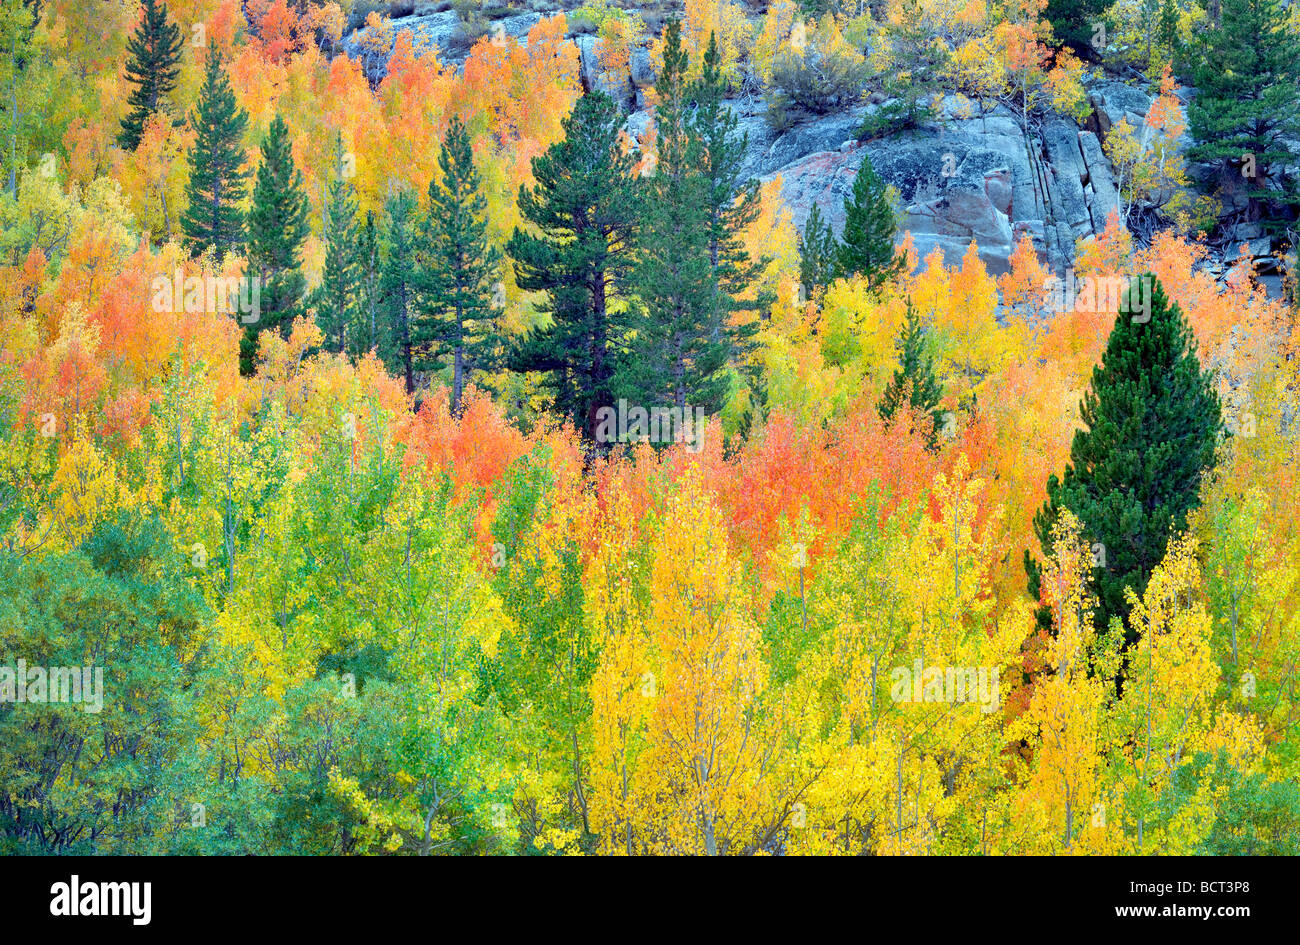 Foresta mista di aspens in autunno colori e abeti di Inyo National Forest in California Foto Stock